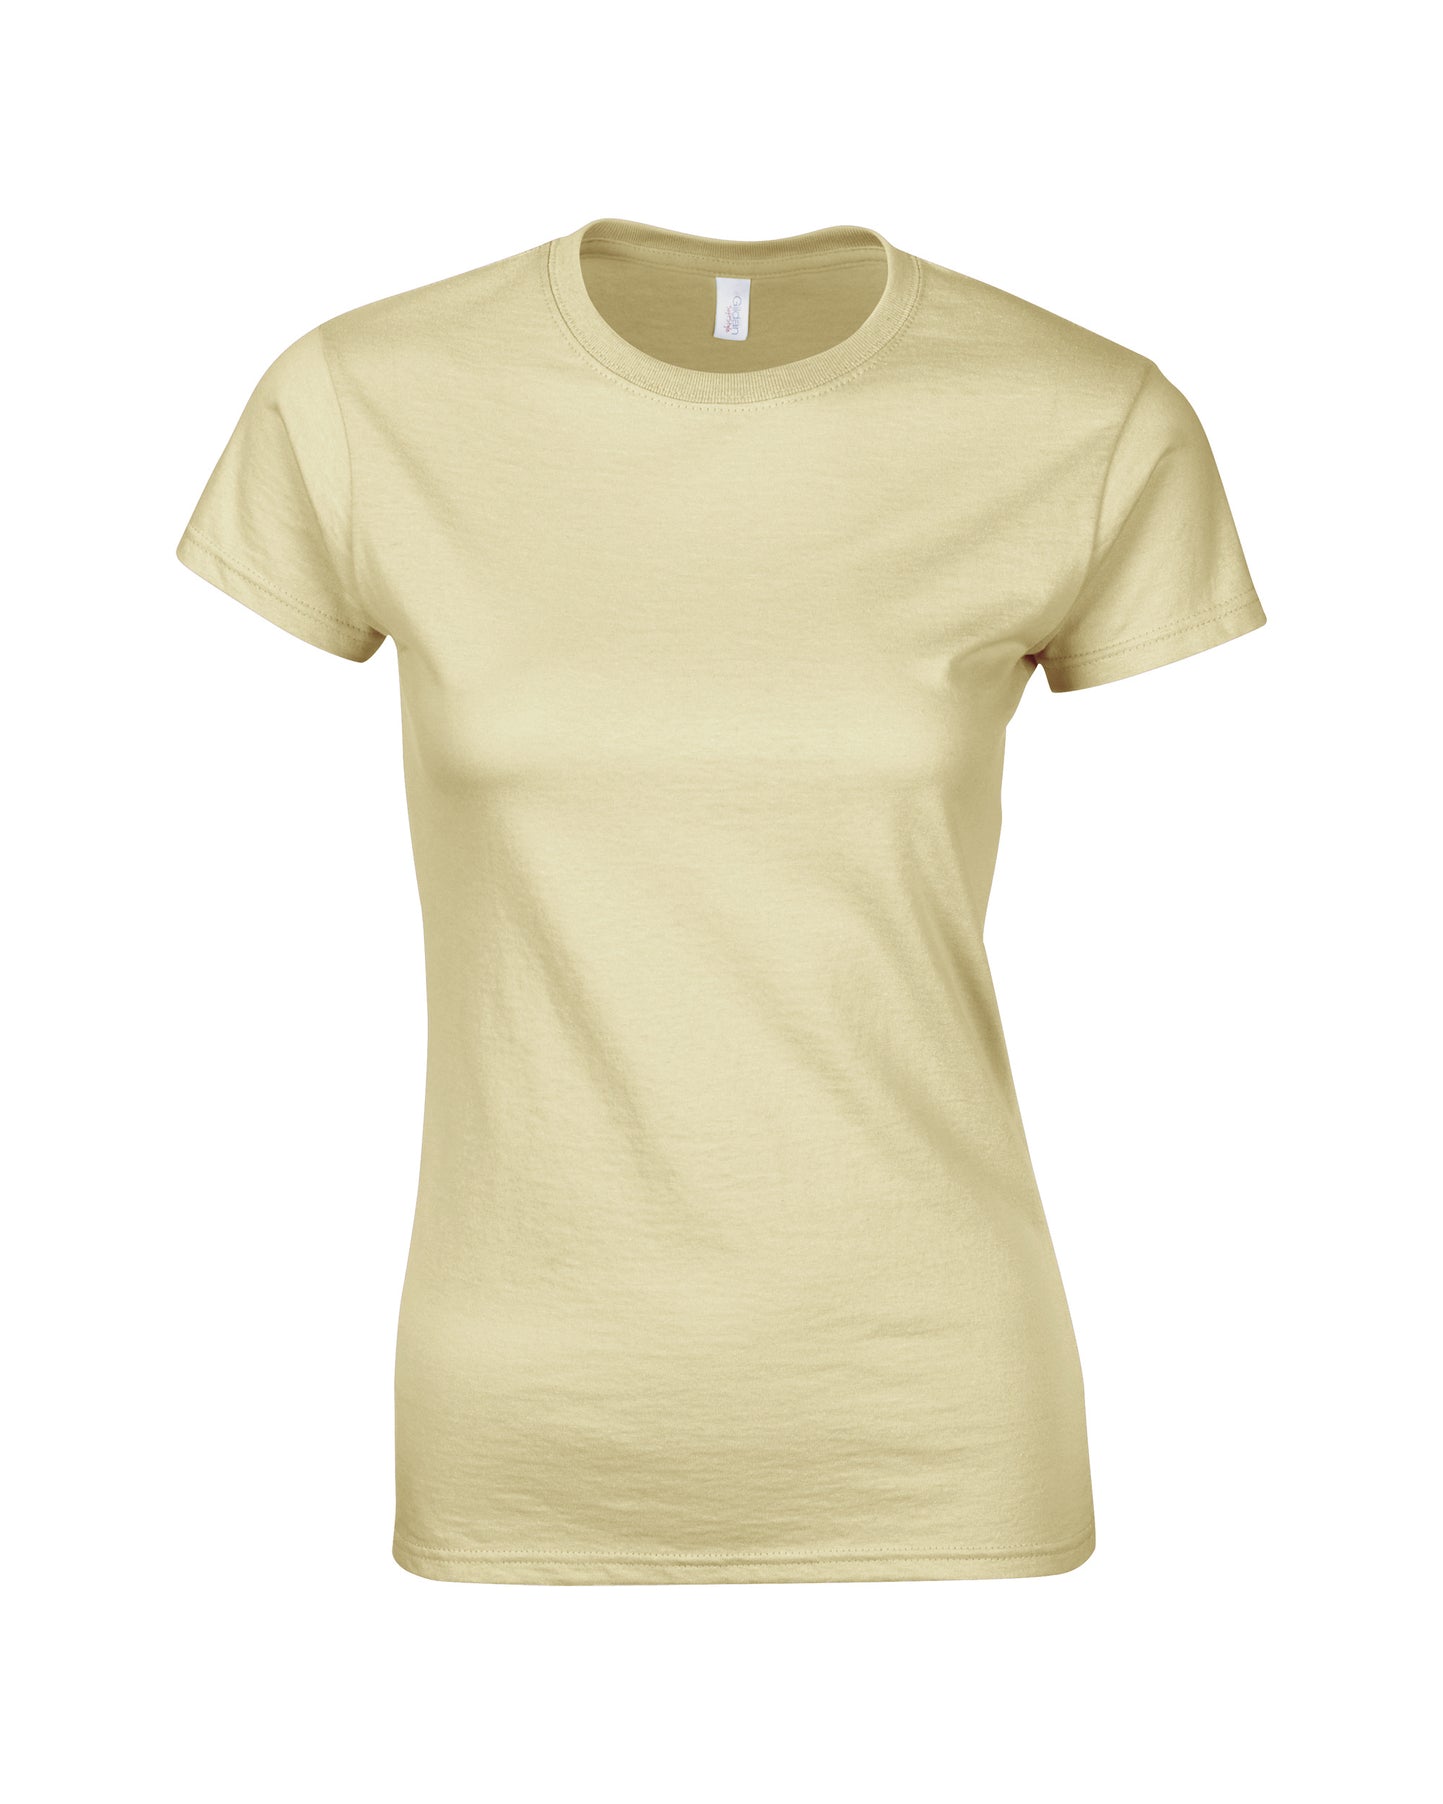 Maglietta T-shirt Donna Leggera Cotone Manica Corta